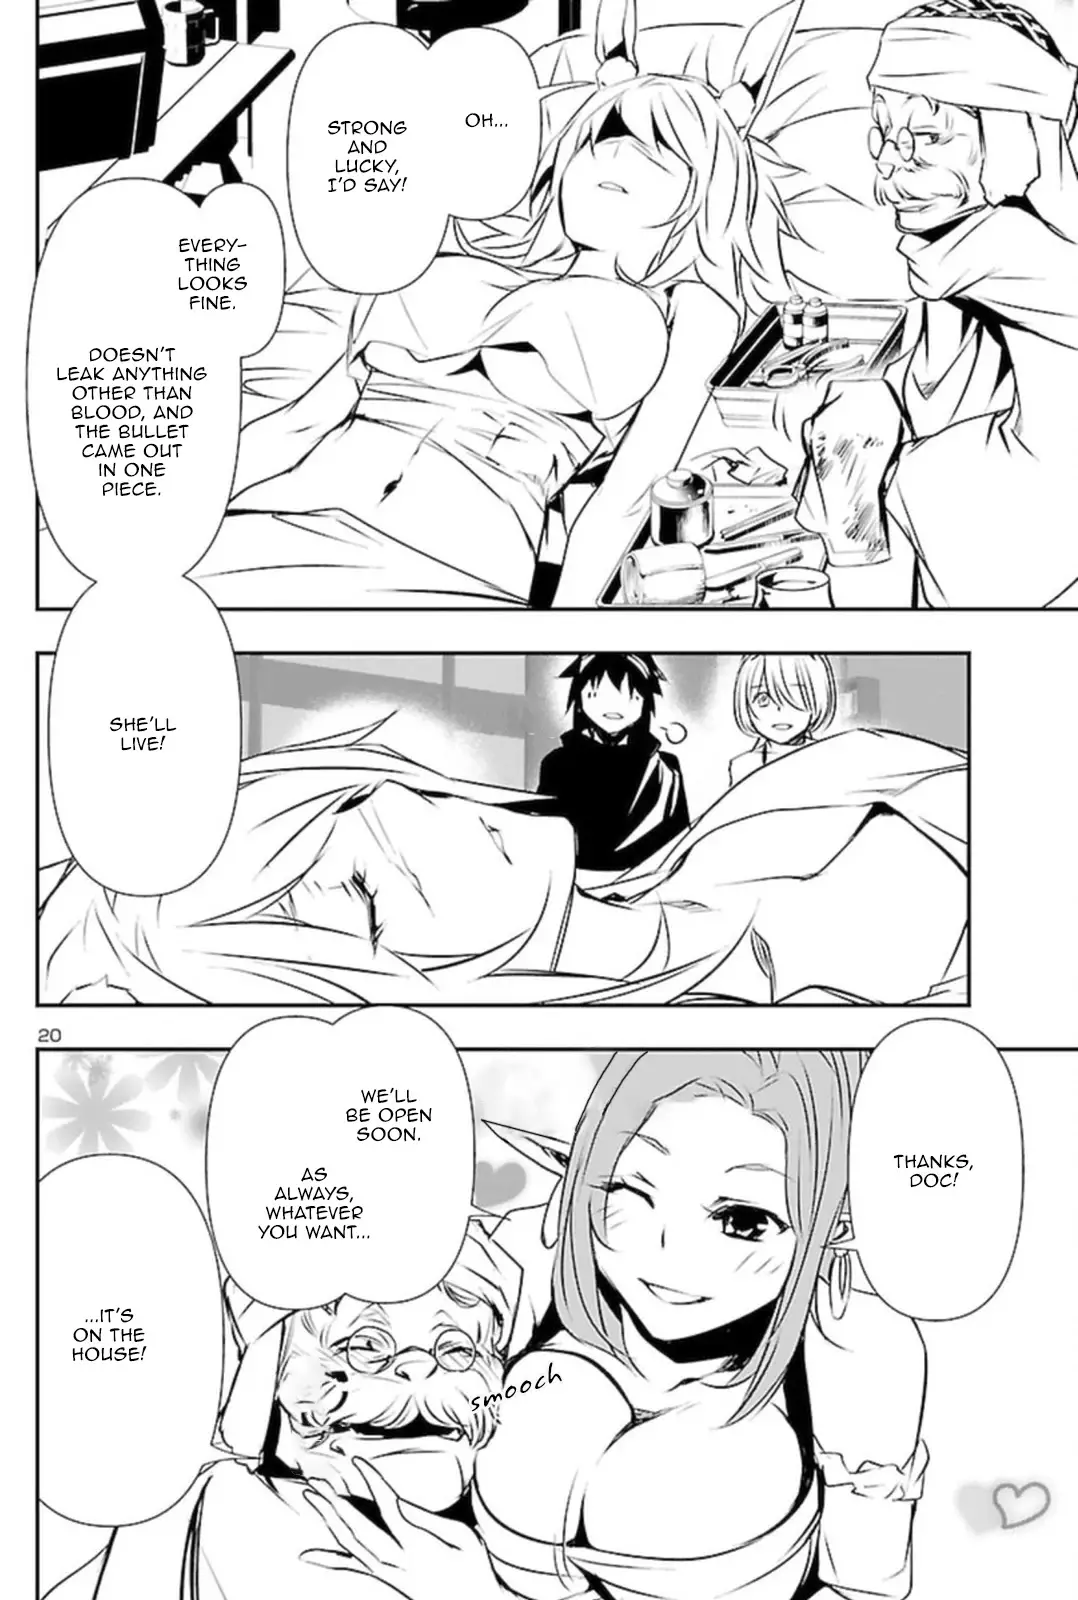 Shinju no Nectar - 53 page 20